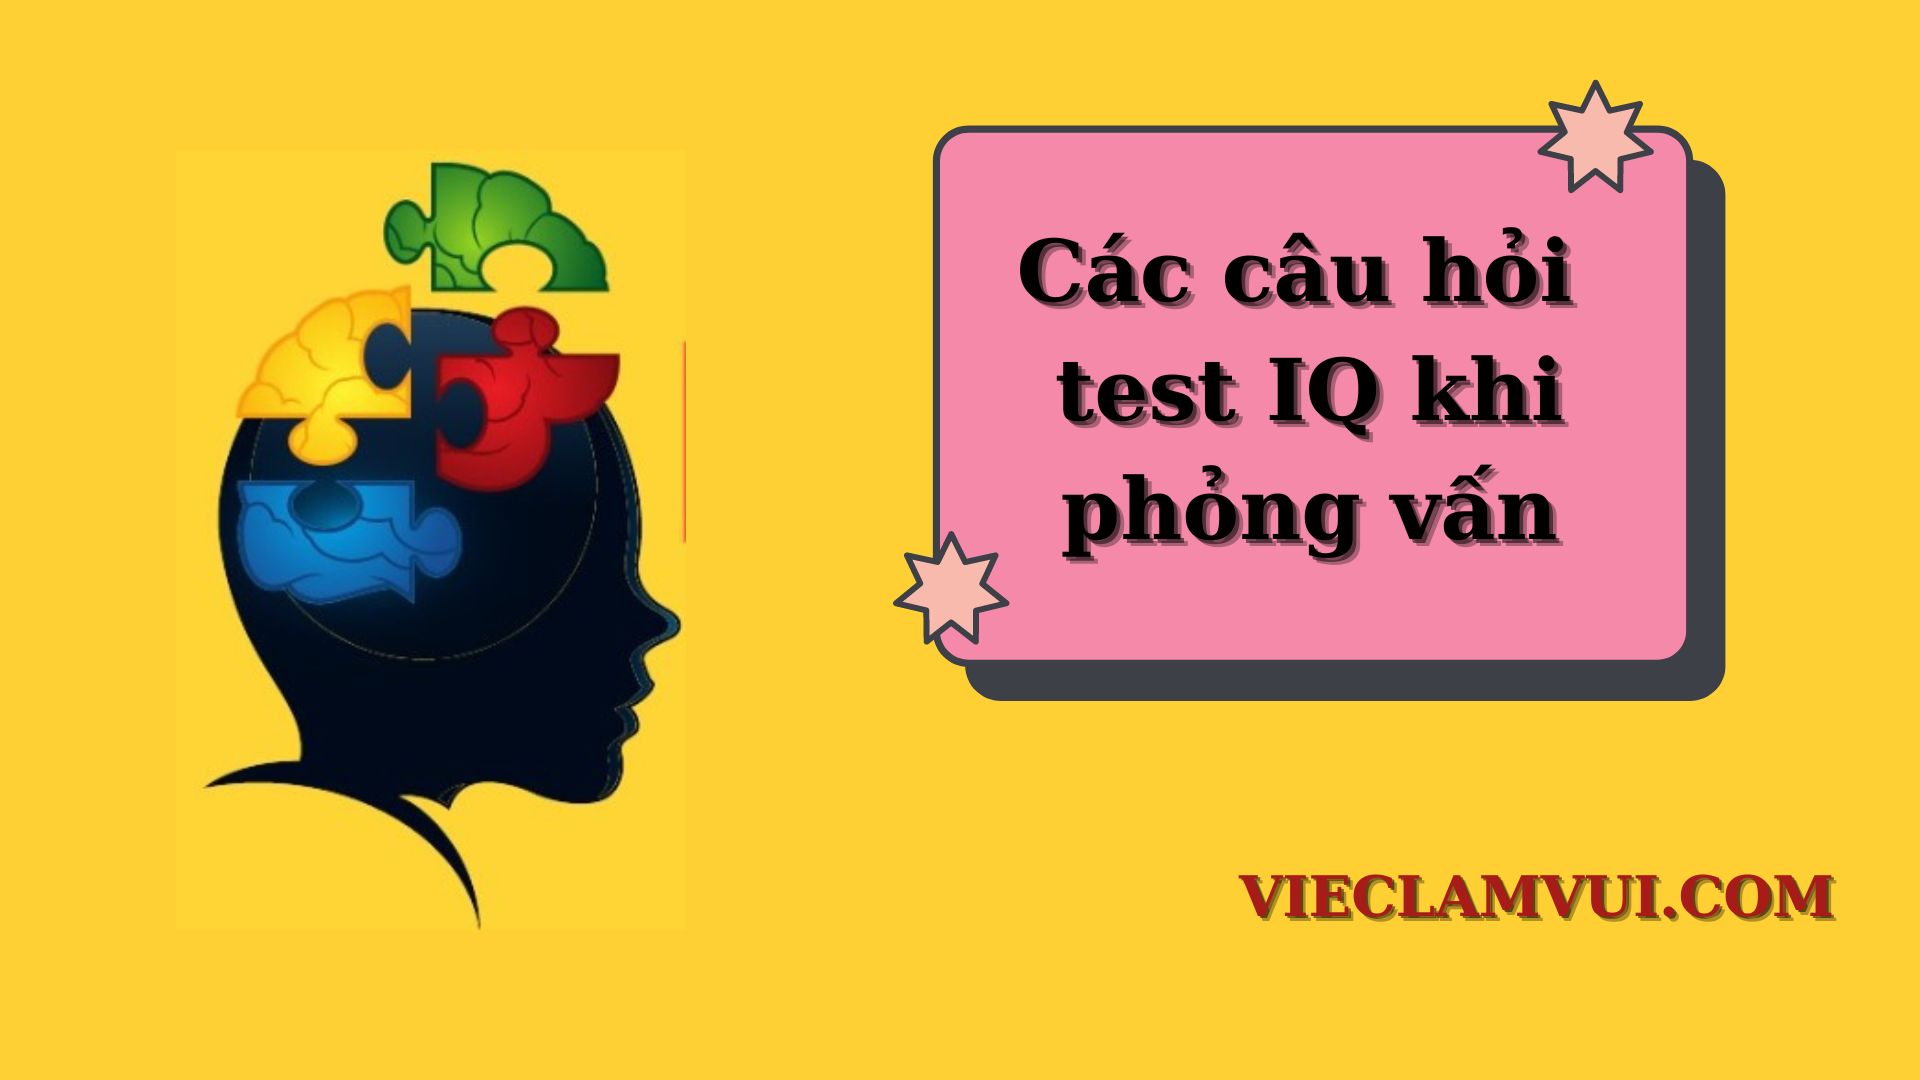 Các câu hỏi test IQ khi phỏng vấn - ViecLamVui